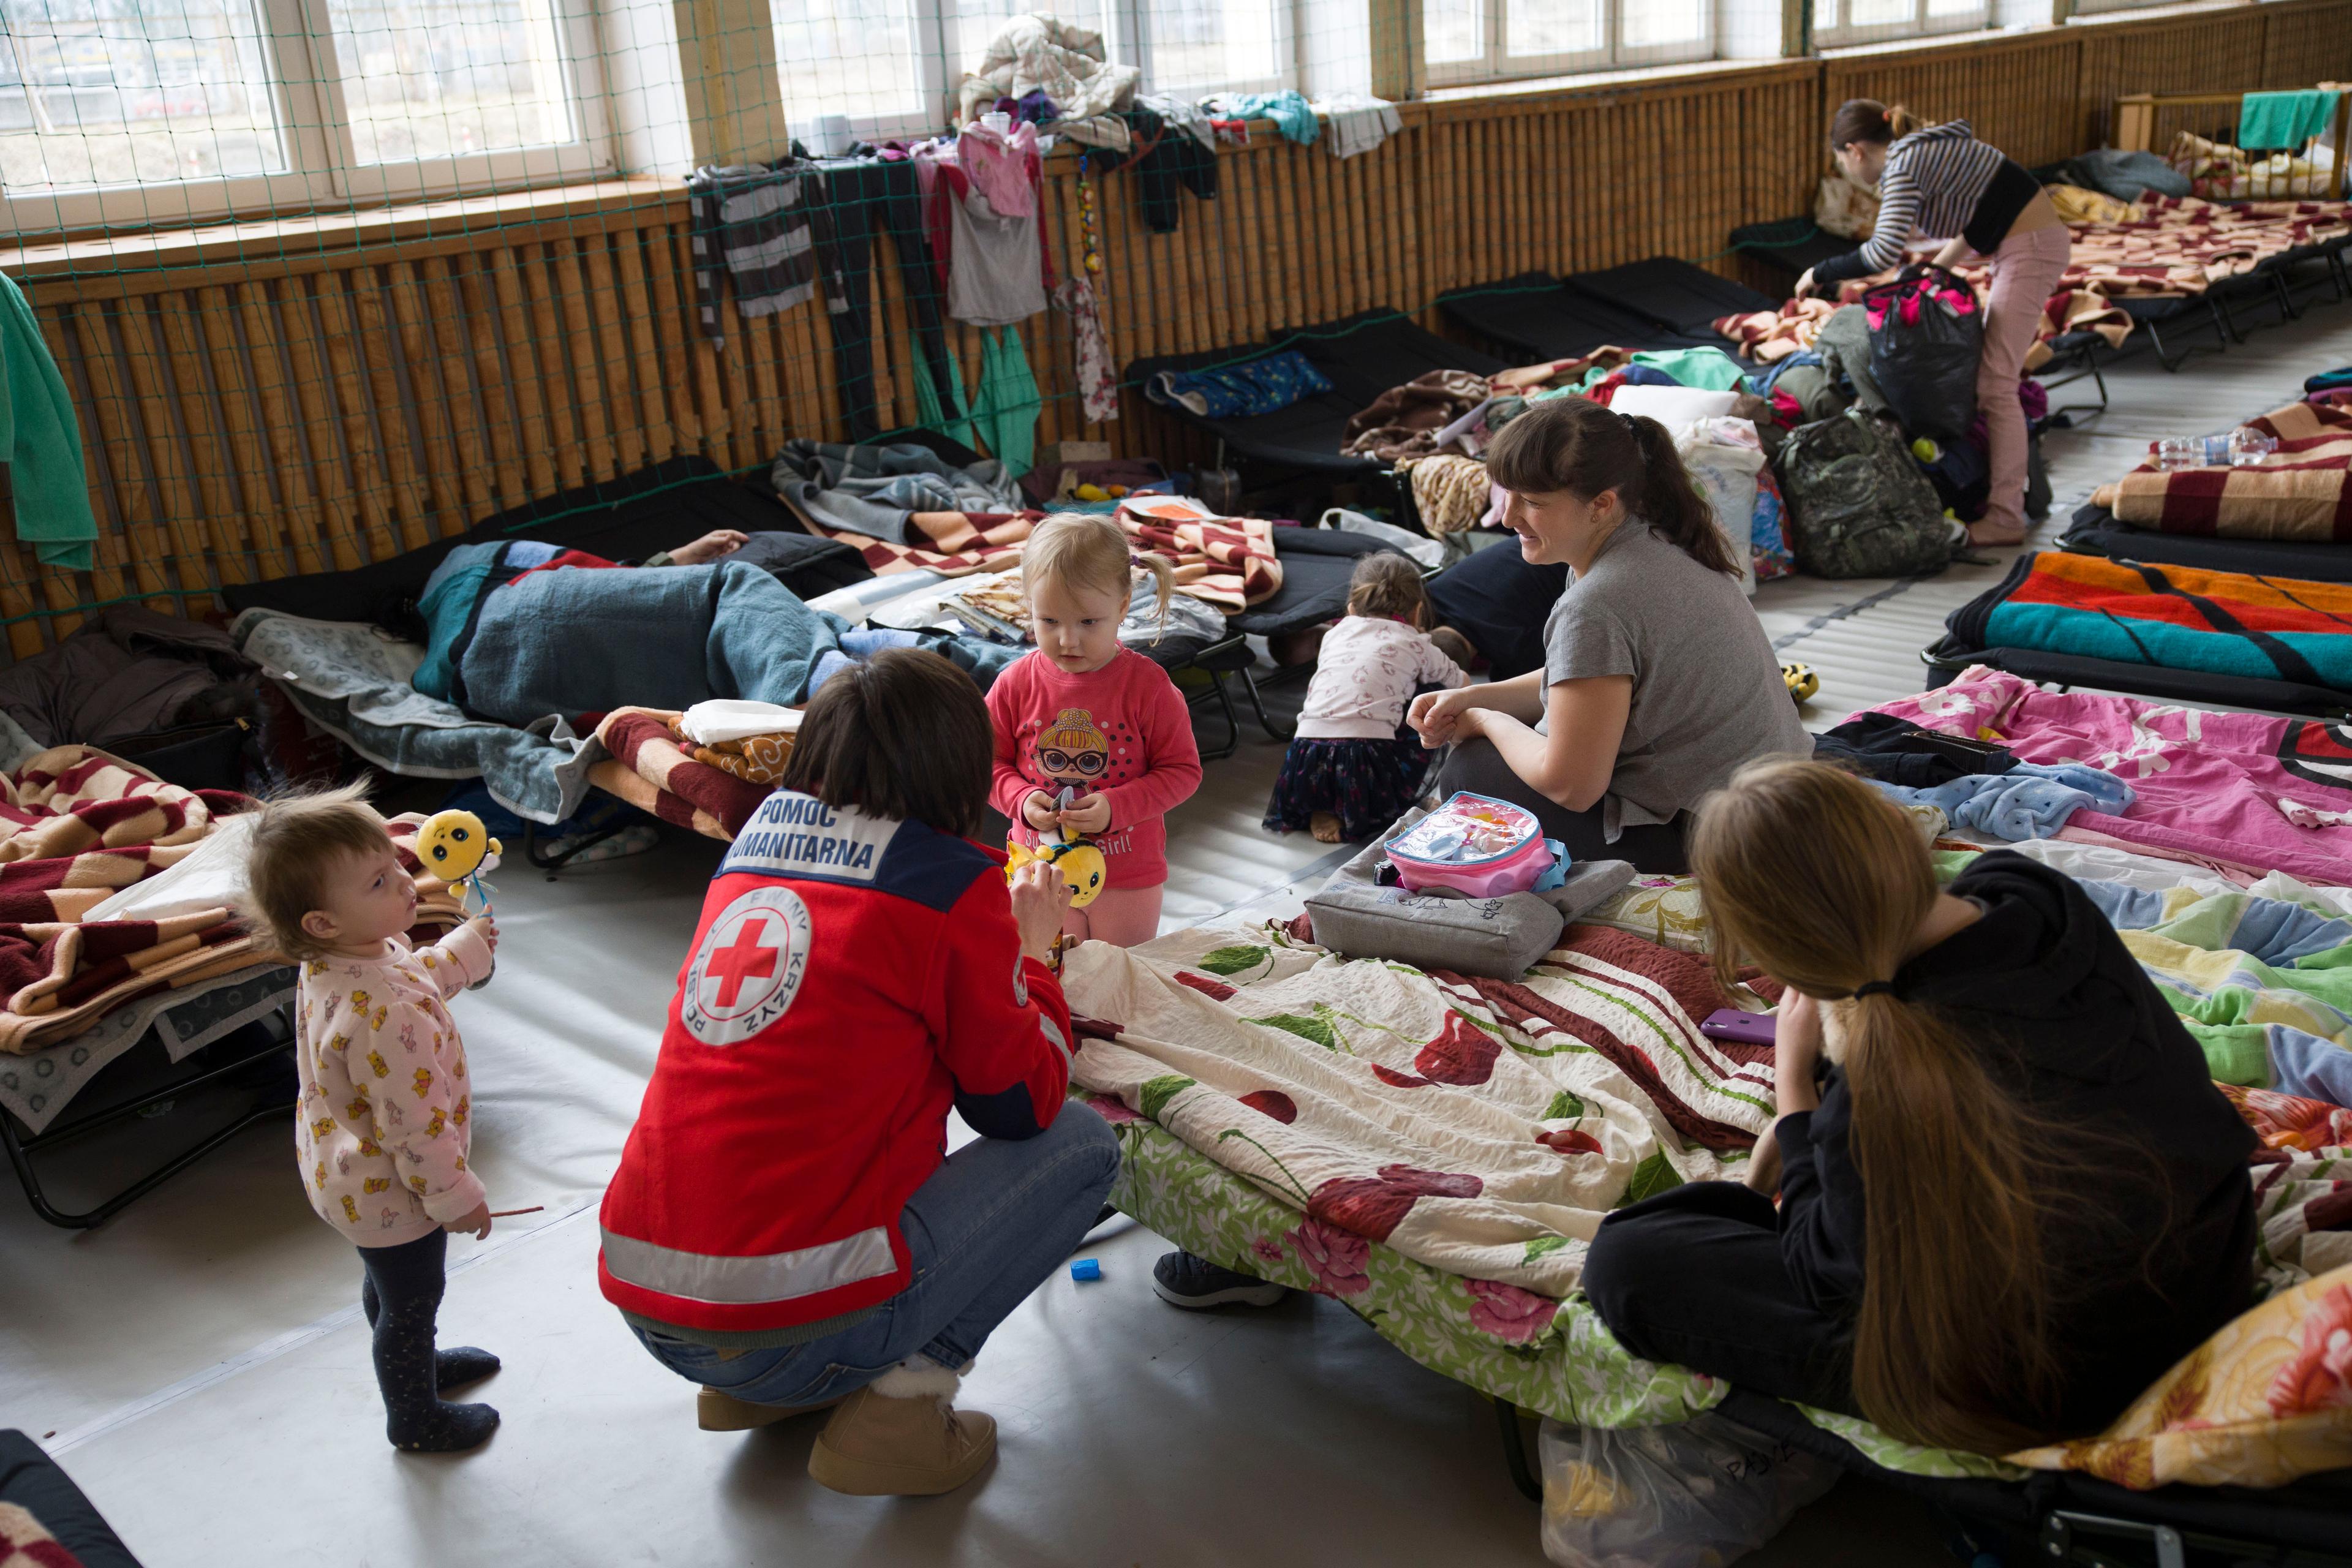 Menschen, die aus der Ukraine geflohen sind, können (vorübergehend) in dieser Unterkunft in der Nähe von Lublin unterkommen. Das Polnische Rote Kreuz stellt Hilfsgüter wie Betten und Decken, aber auch Lebensmittel und Wasser zur Verfügung. Bei den Flüchtlingen handelt es sich hauptsächlich um Frauen und Kinder. In den ersten anderthalb Wochen nach der Eskalation der Gewalt in der Ukraine wurden bereits rund 300 Personen untergebracht.